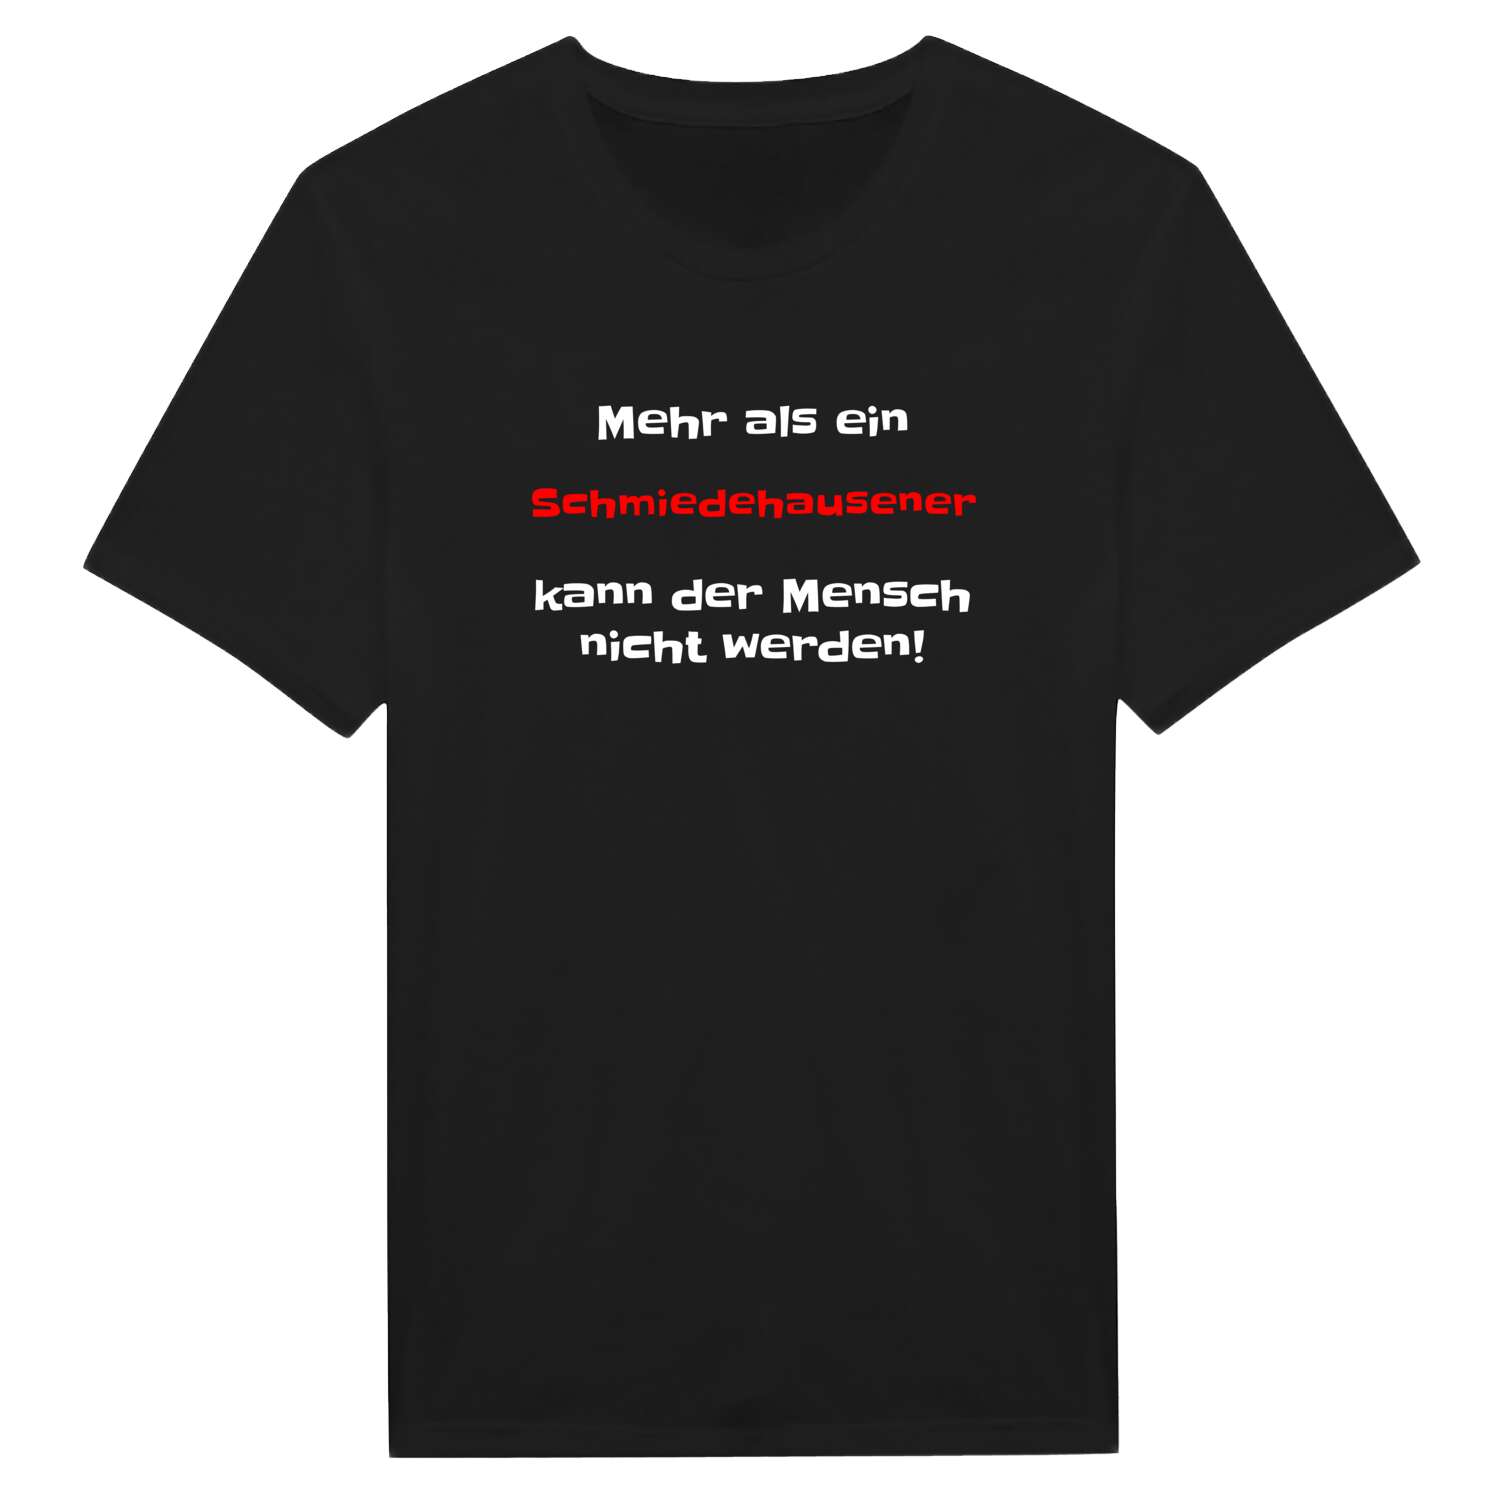 Schmiedehausen T-Shirt »Mehr als ein«